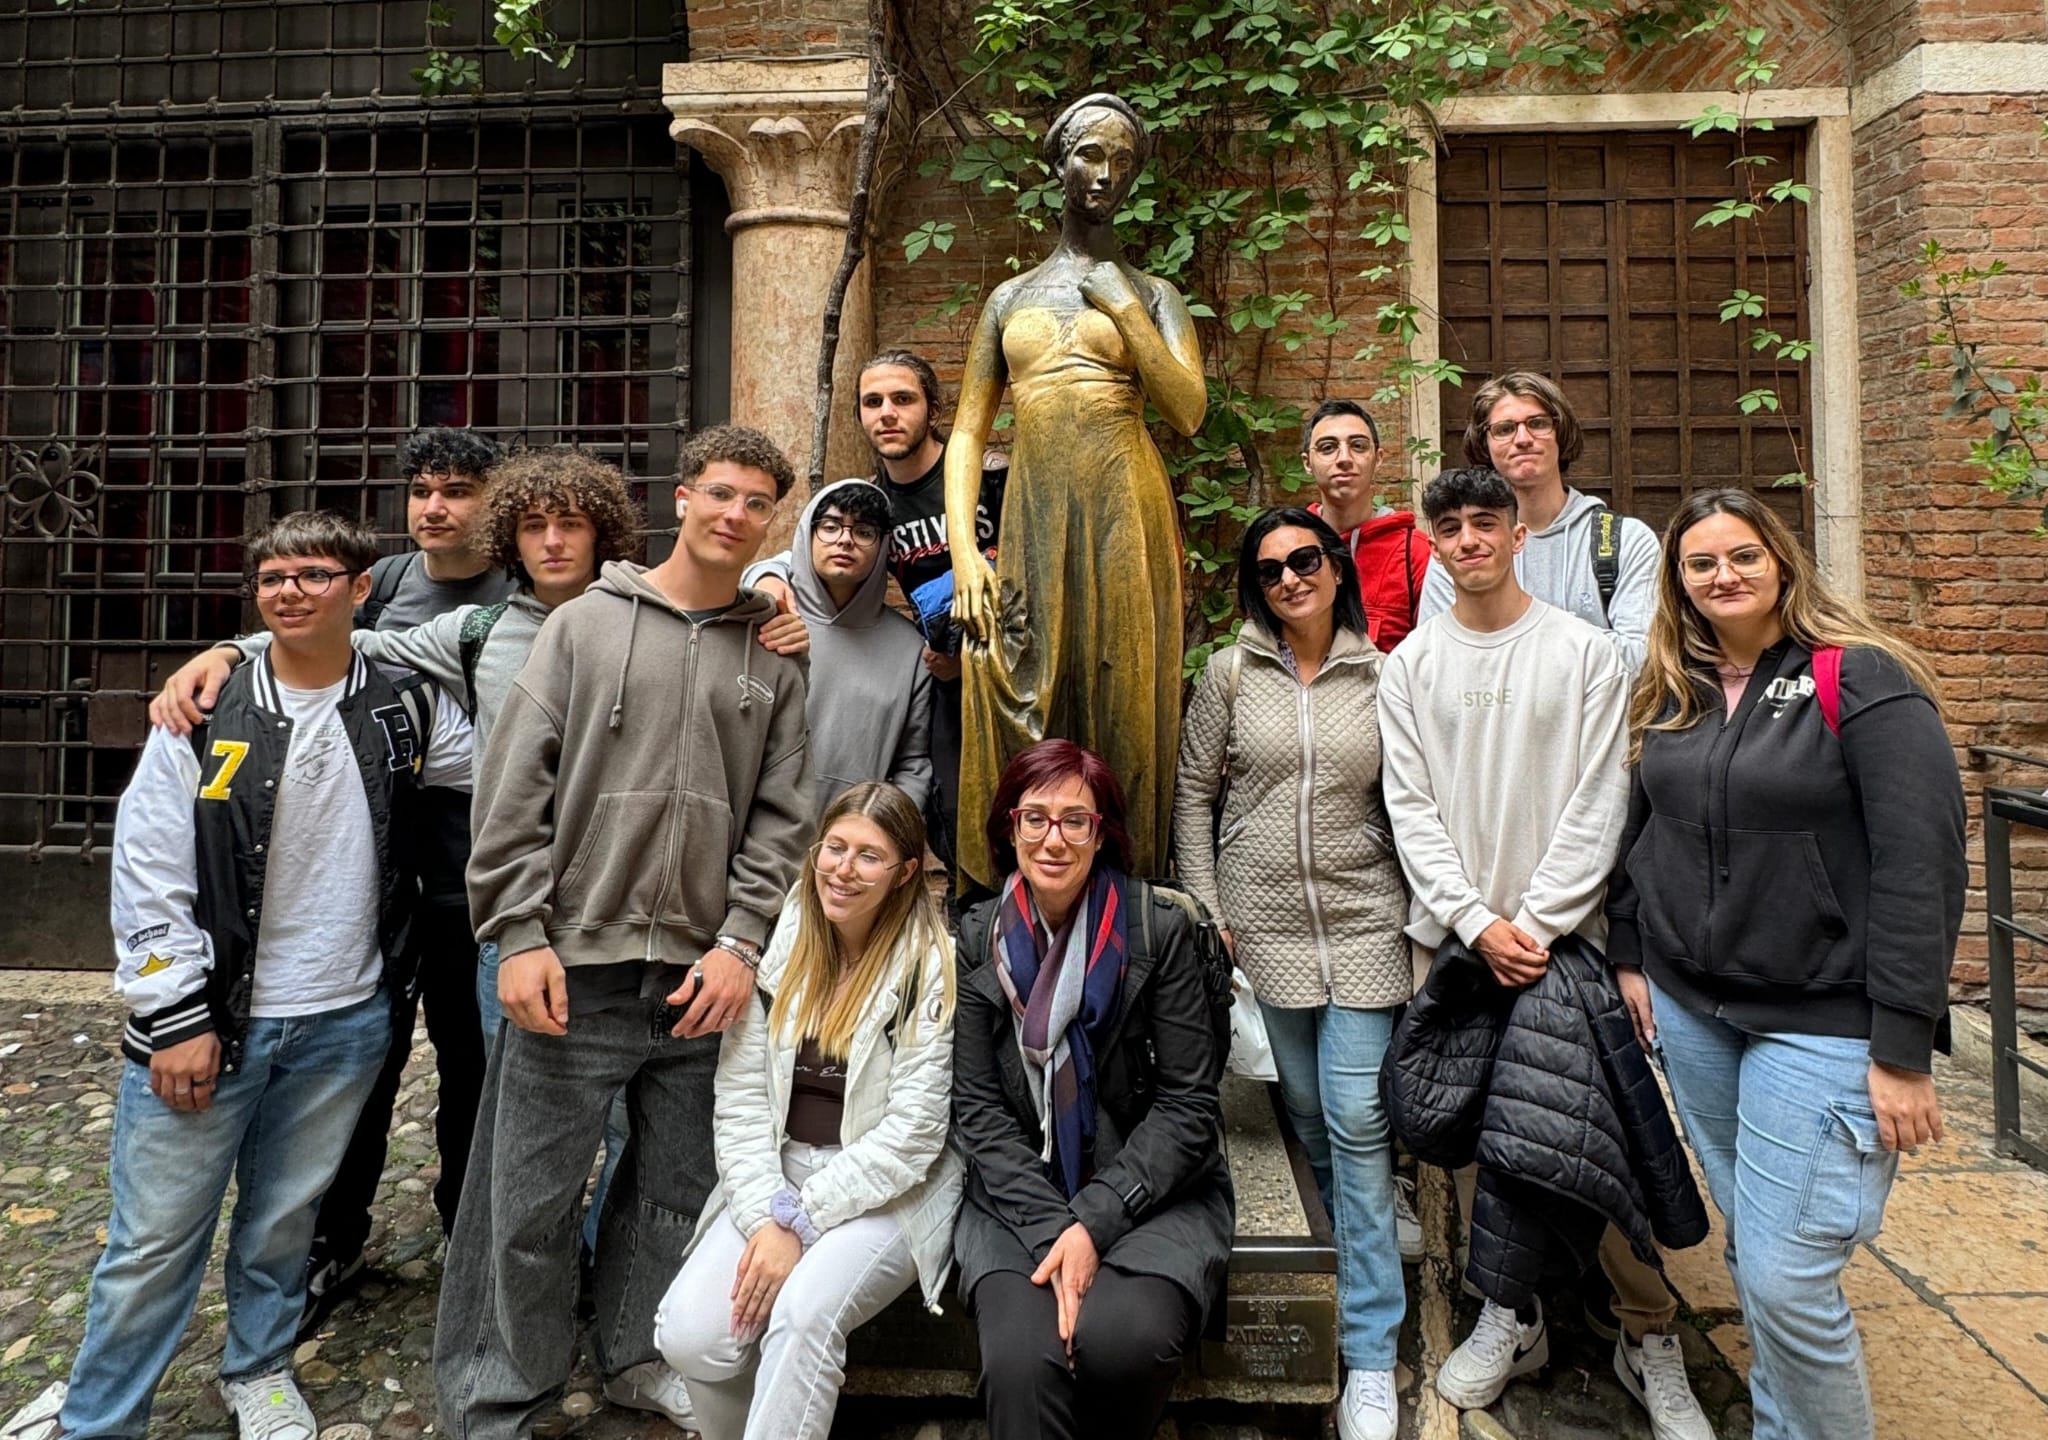 Catalizzatori di Futuro, gli Studenti dell’I.T.E.T. “Rapisardi-Da Vinci” alla Scoperta dell’Innovazione a Verona